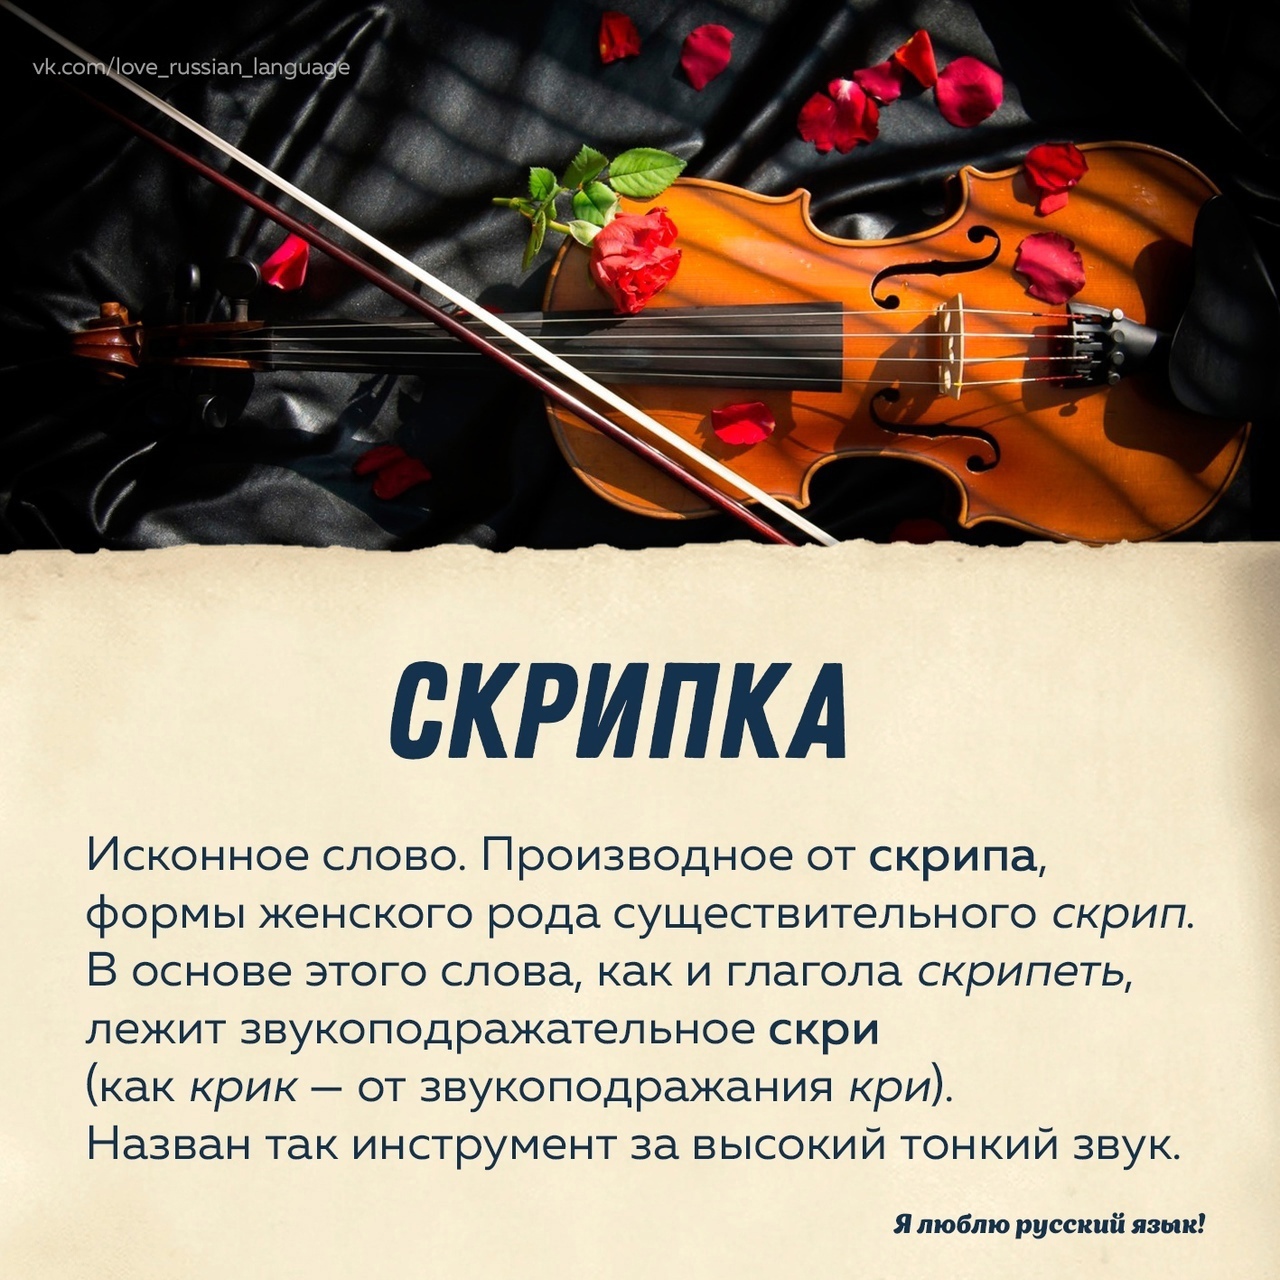 Скрипка. Слово скрипка. Происхождение слова скрипка. Интересные факты о скрипке.